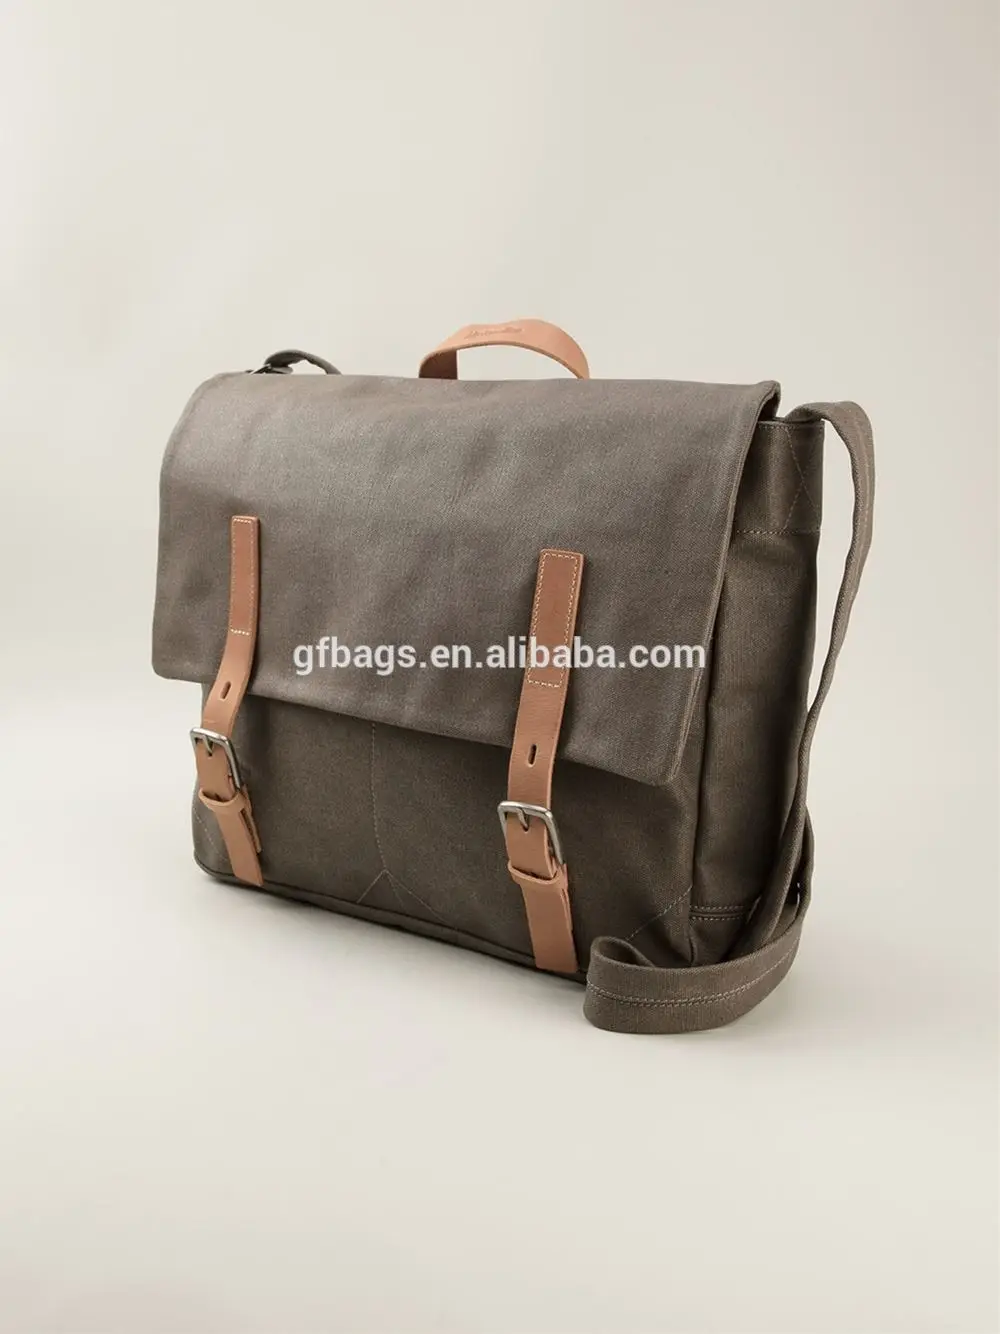 Vintage Style Canvas men Shoulder messenger Bag Cross body wear-proof business travel causal laptop bag shoulder Bag for Men